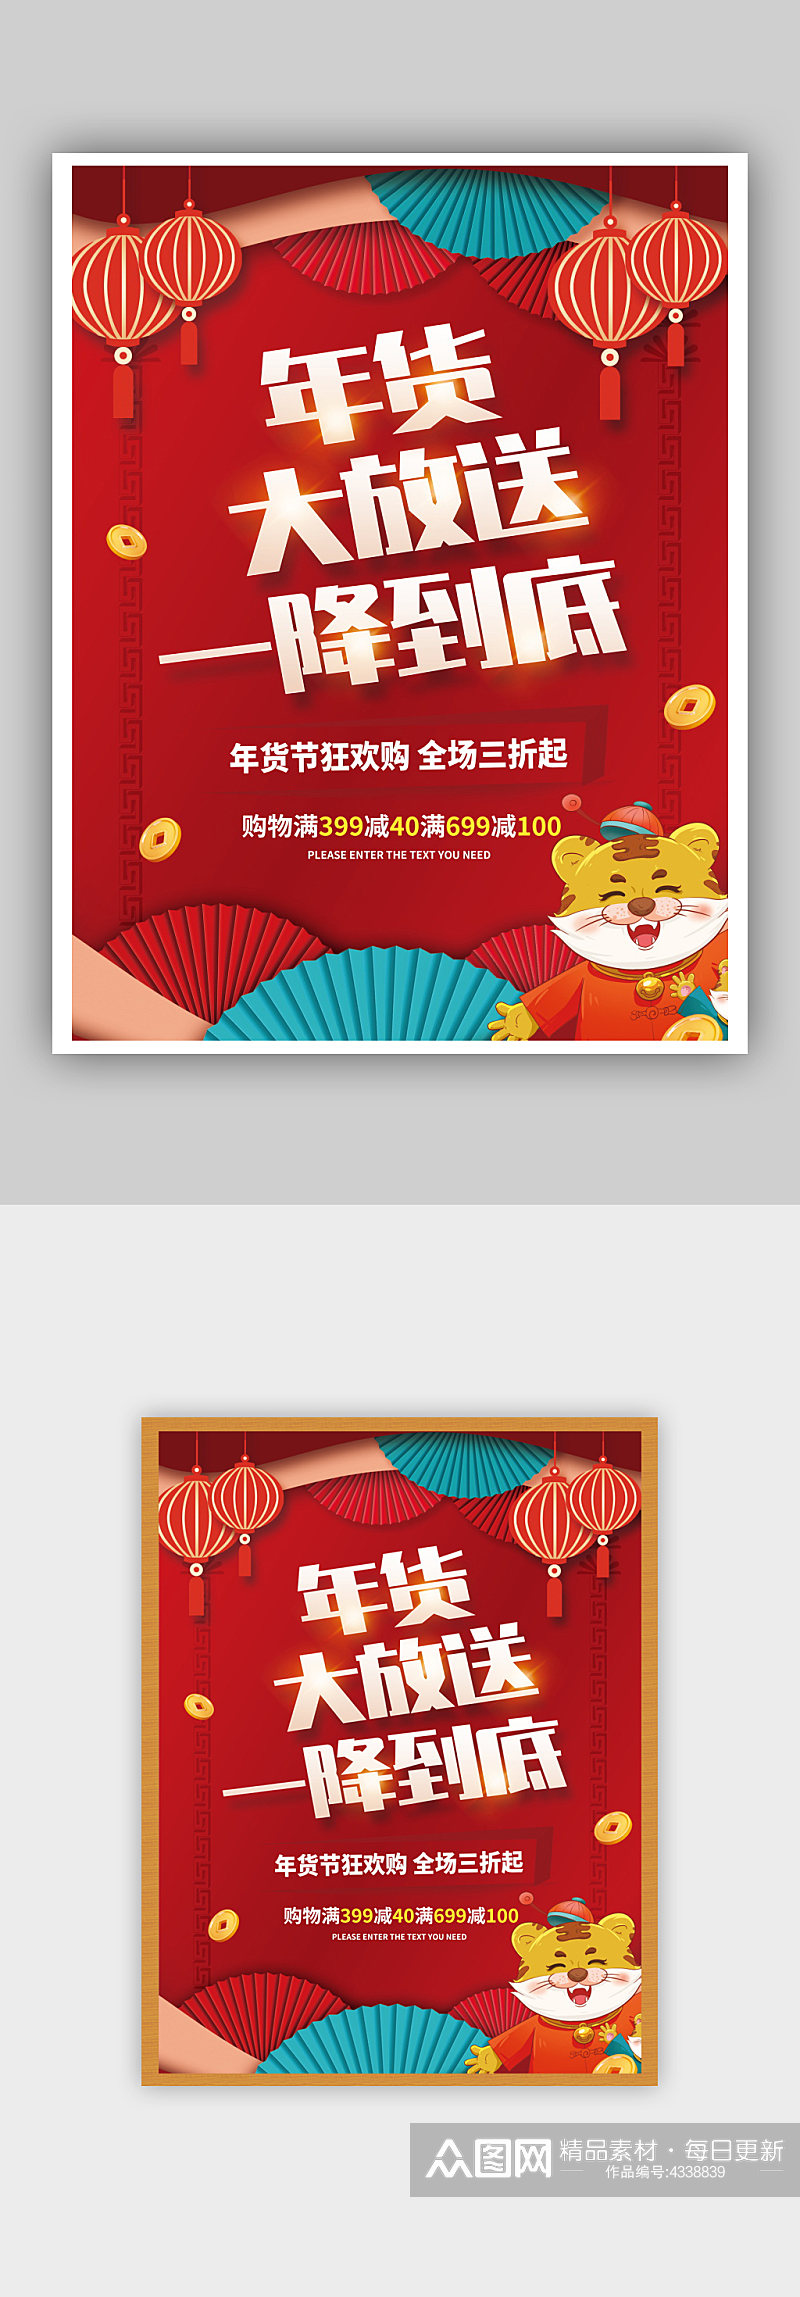 创意春节年货节大促销活动海报素材